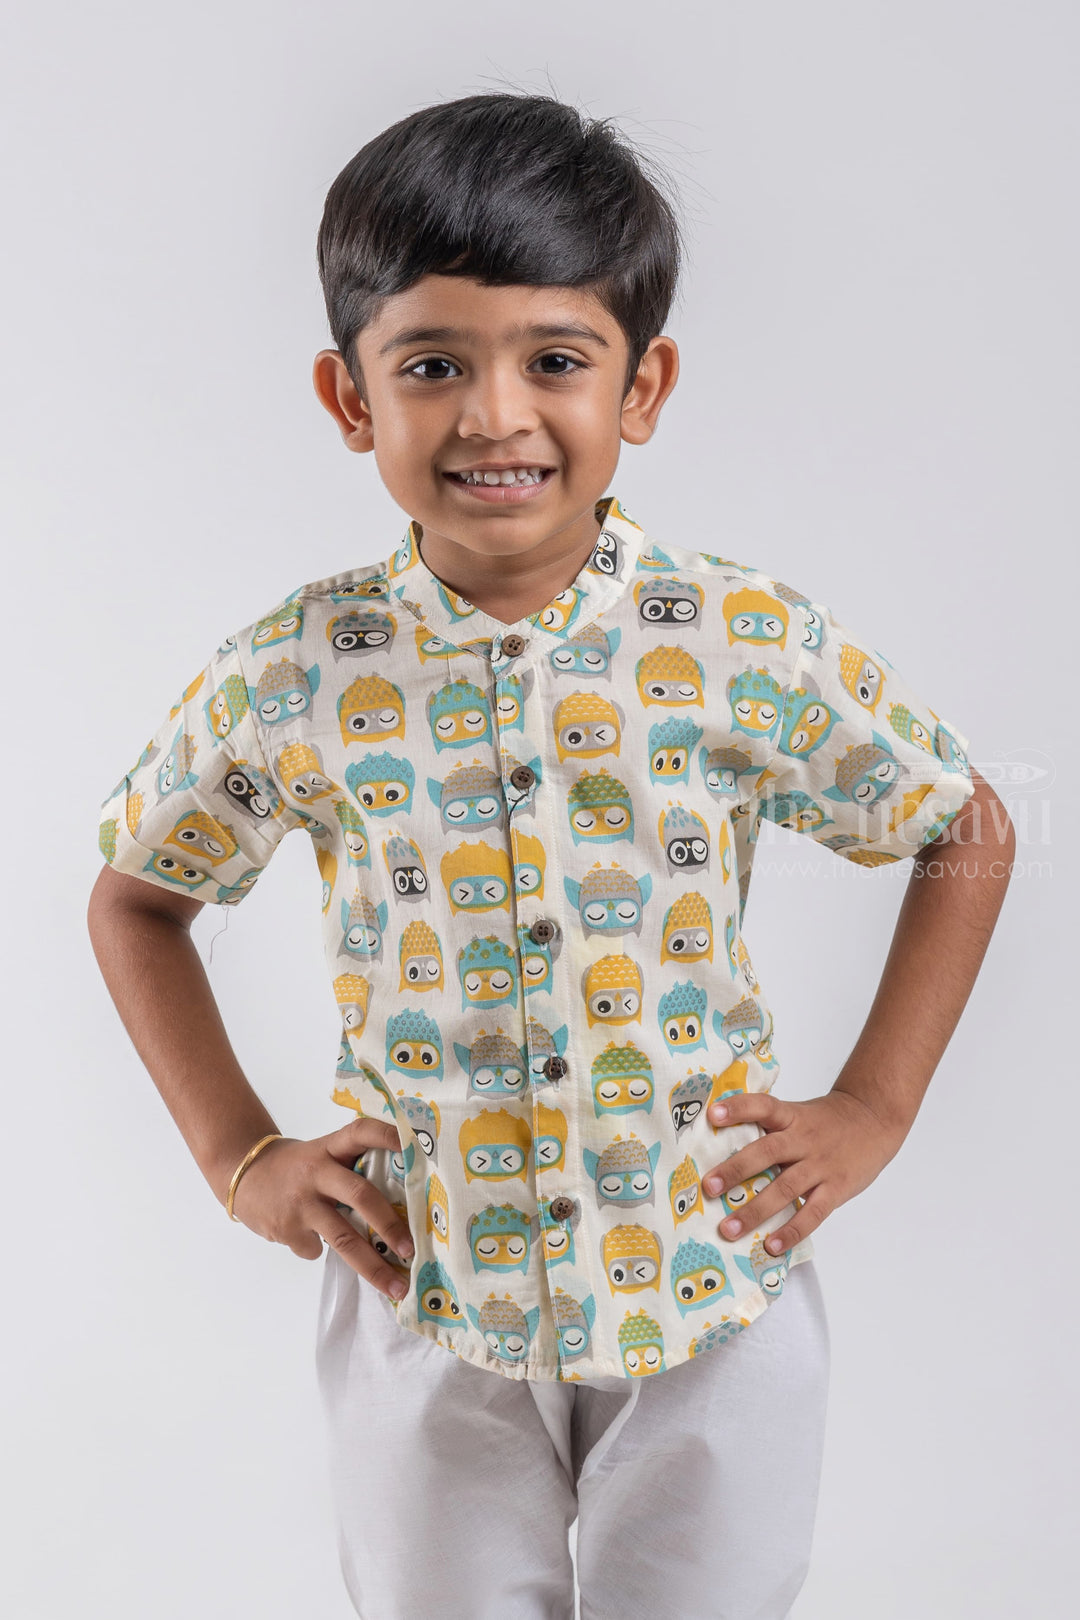 The Nesavu Boys Cotton Shirt Indie Wear Shirt for Boys | Wooden Button Detail | Nesavu | Sleepy Owl Printed psr silks Nesavu 14 (6M) / Half White / Cotton BS035